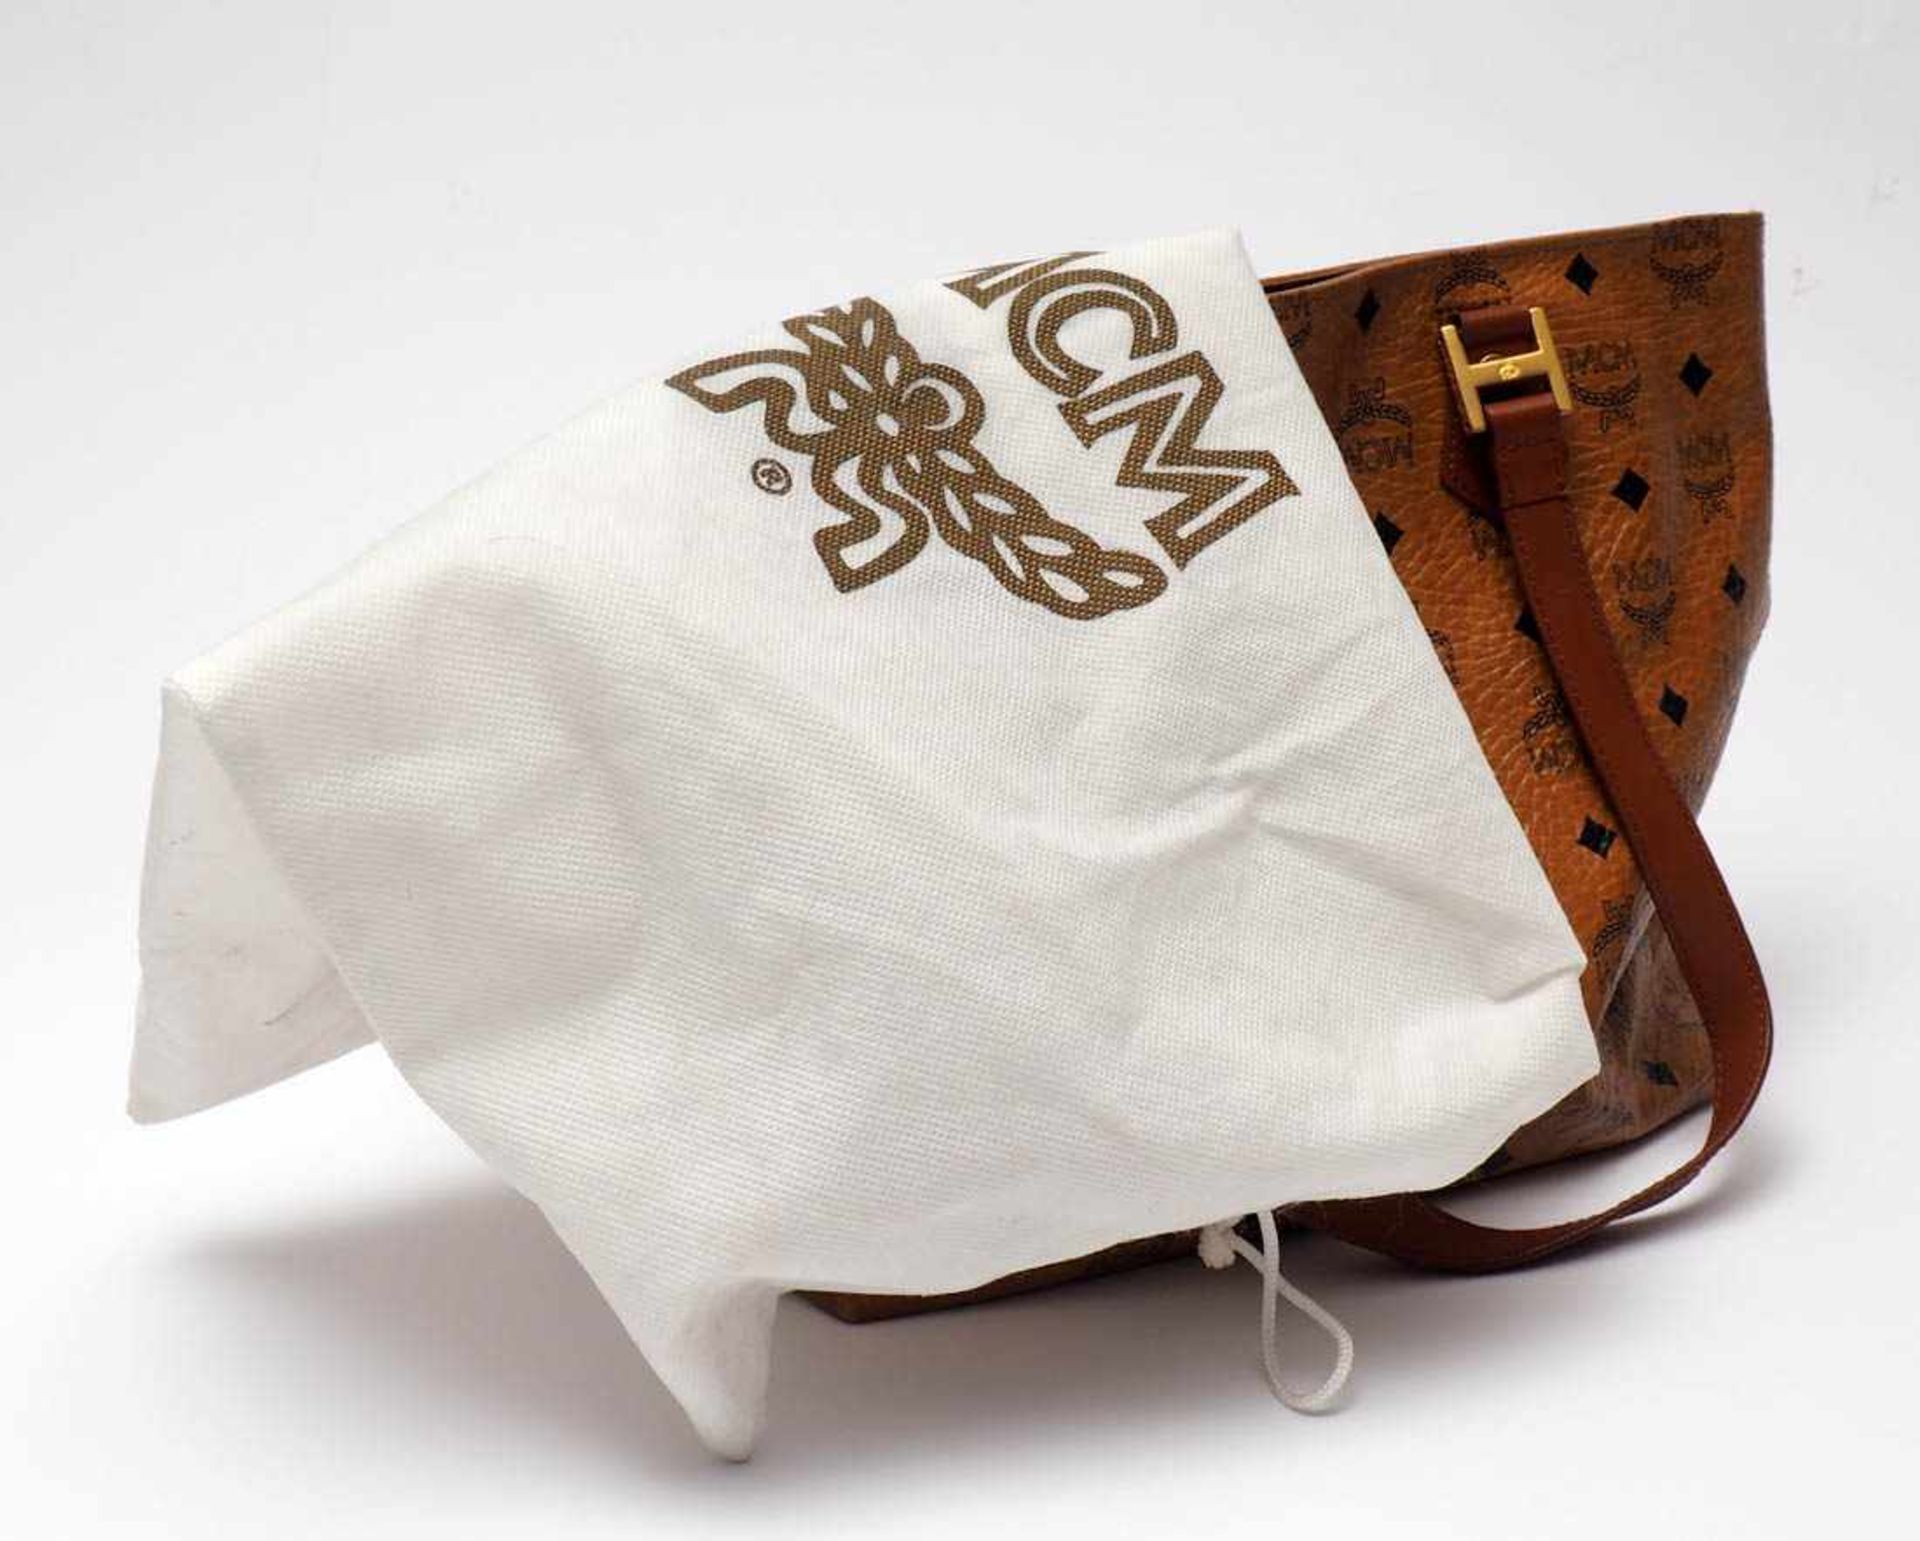 Handtasche, MCM Helles Leder, Beschläge aus vergoldetem Metall. Numeriert 17120. 25x31cm. Mit - Bild 8 aus 8